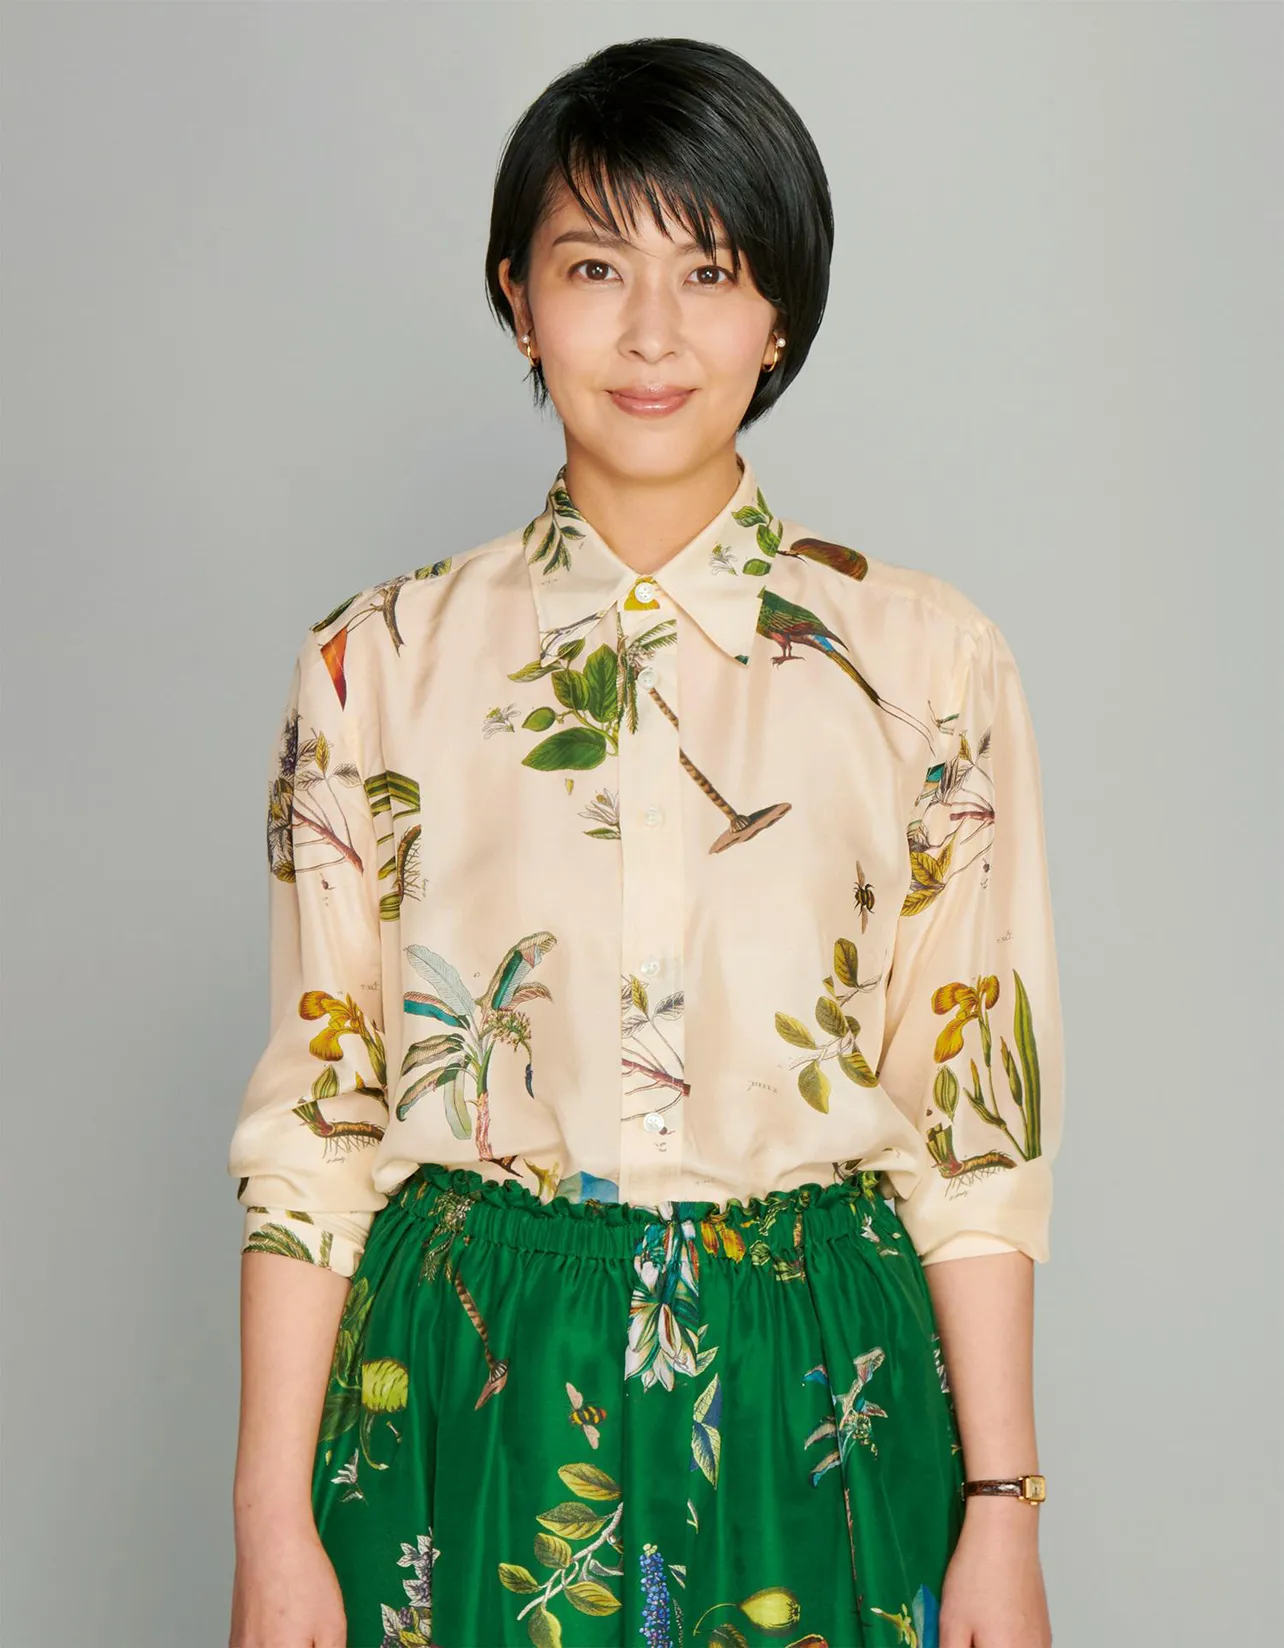 松たか子が第108回ドラマアカデミー賞で主演女優賞を獲得